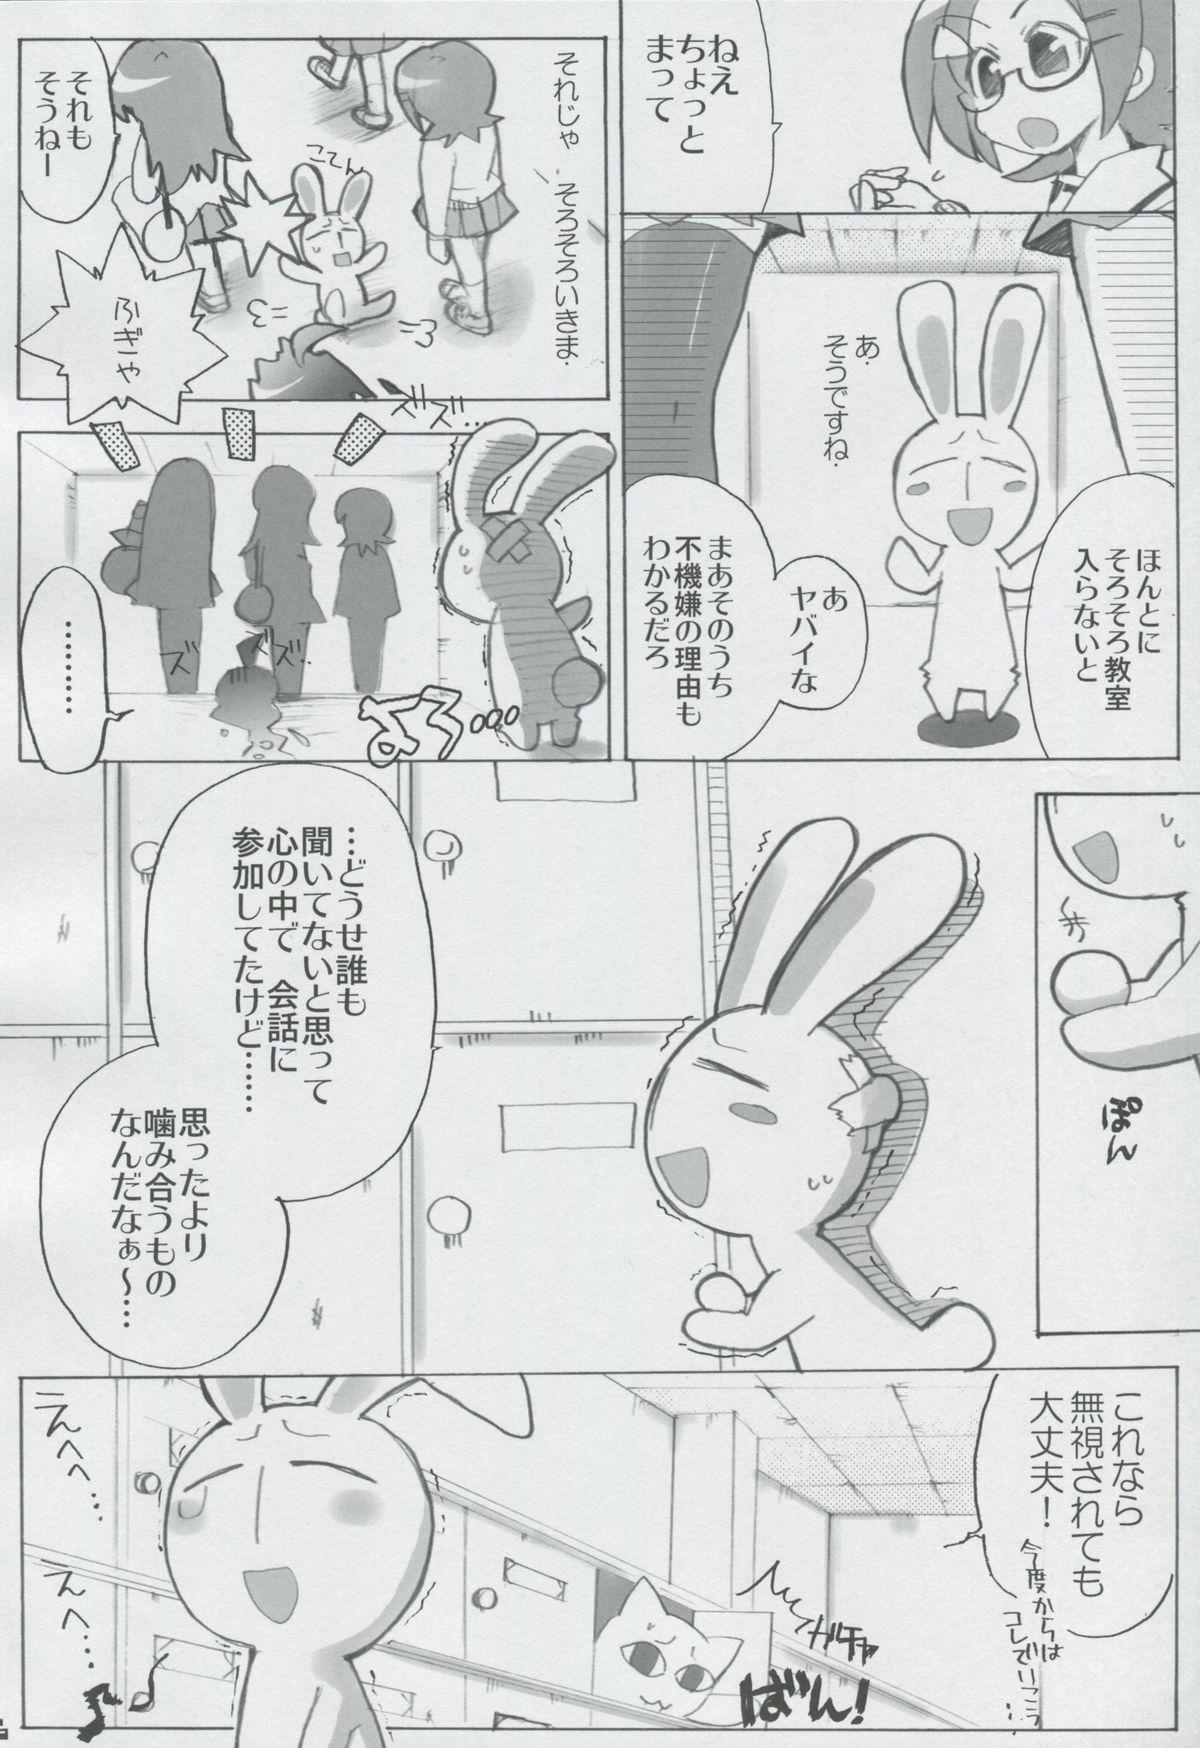 Price Momo Tsuki Monsters 1st-half - Pani poni dash Plug - Page 5